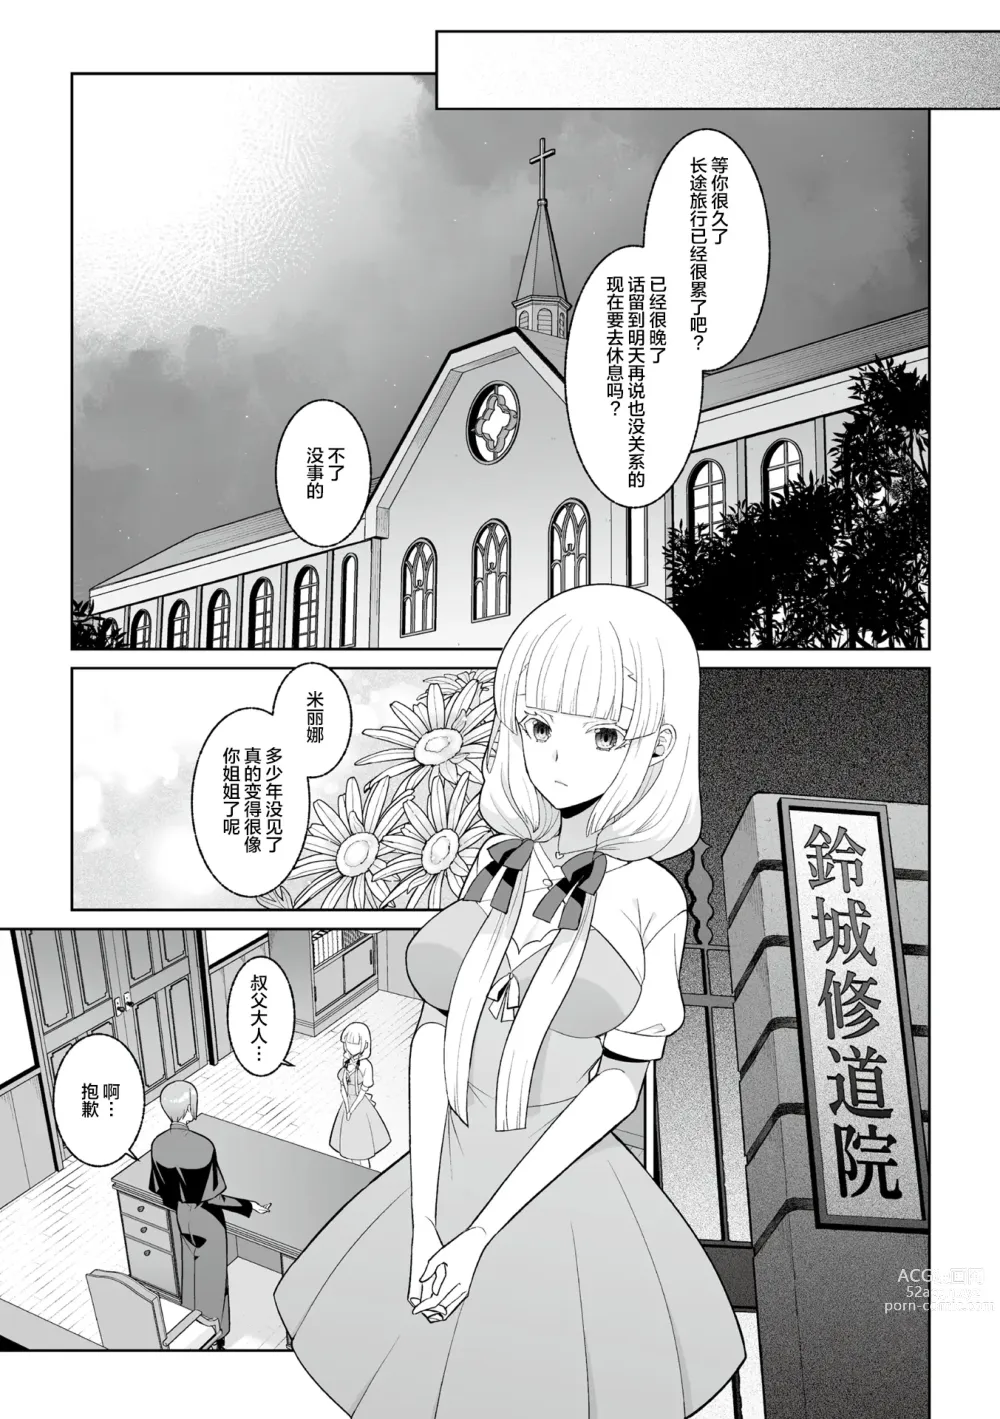 Page 4 of manga Tsukitei no Seijo Inmitsu no Utage Ch. 1